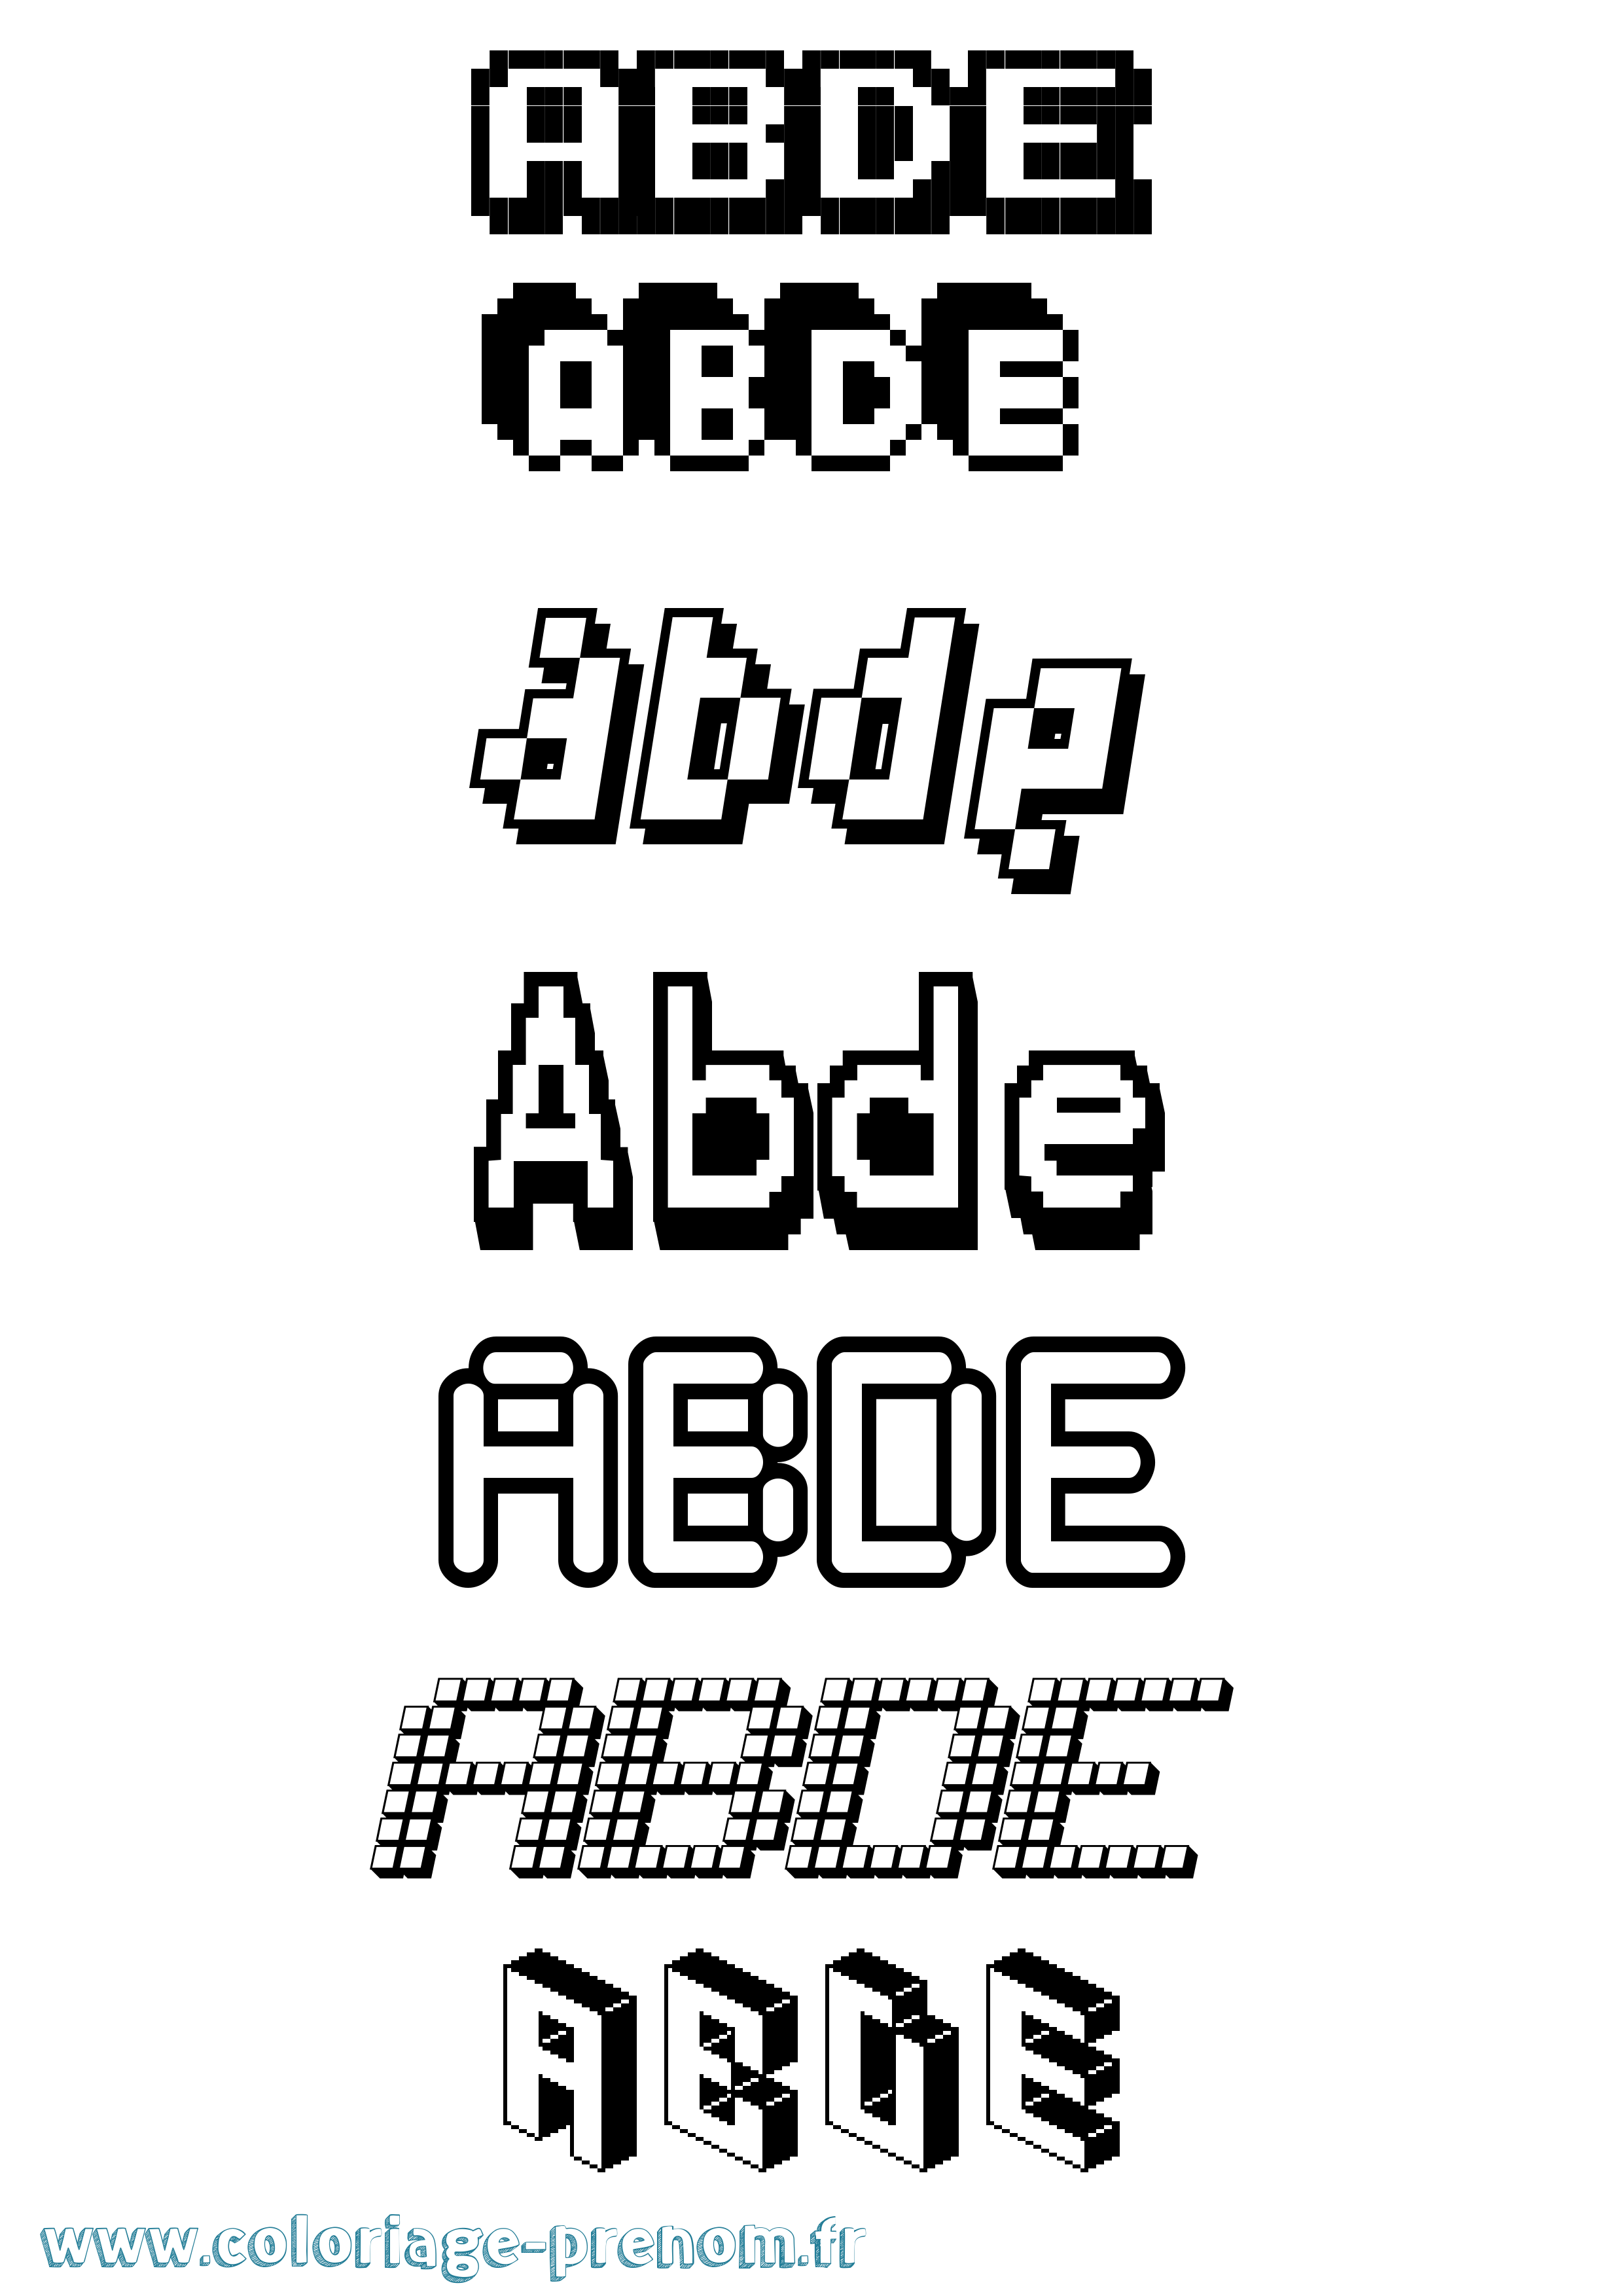 Coloriage prénom Abde Pixel